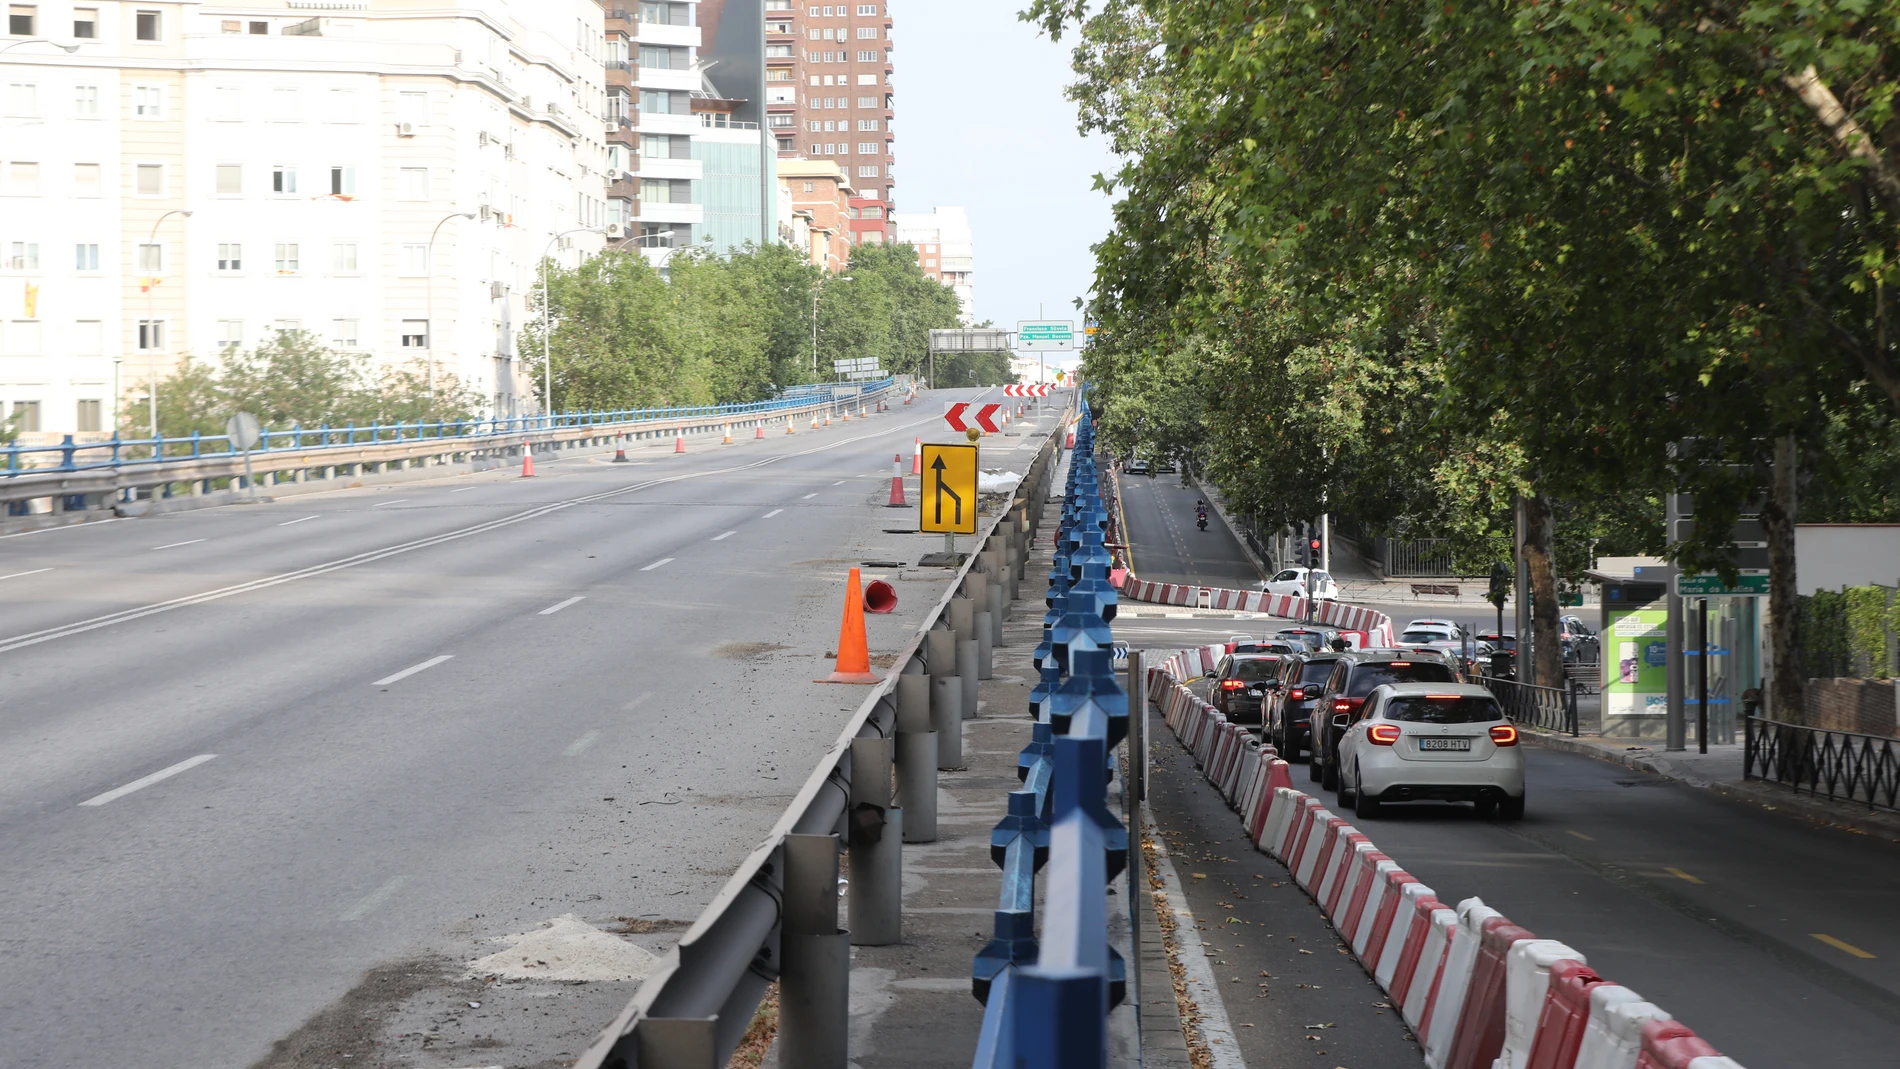 El puente que une las calles de Joaquín Costa y Francisco Silvela sobre la glorieta de López de Hoyos y Príncipe de Vergara, cortado al tráfico, en Madrid.